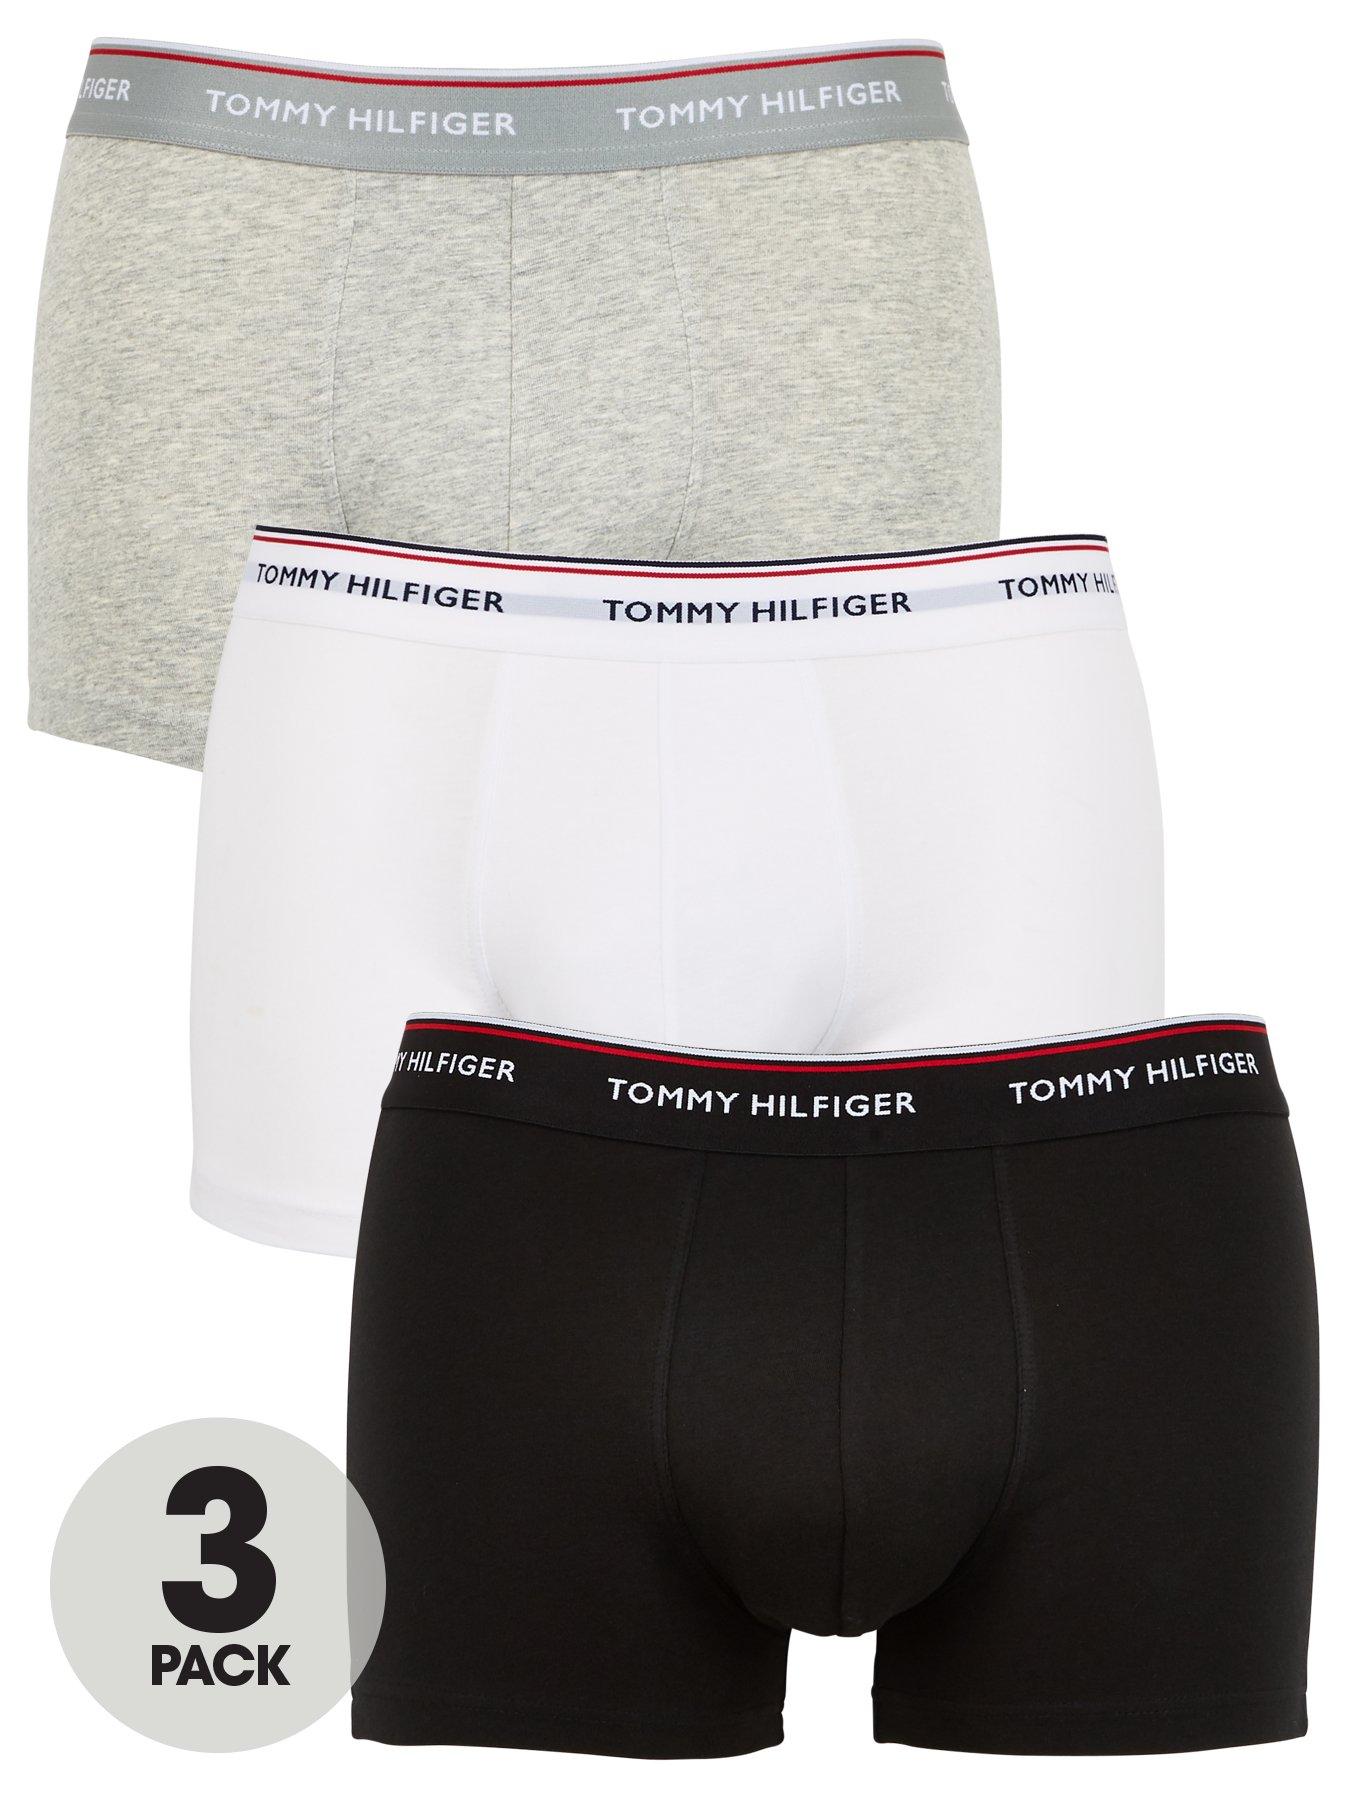 Tommy Hilfiger 3 Pack Premium Essentials Trunks - Black/White/Grey